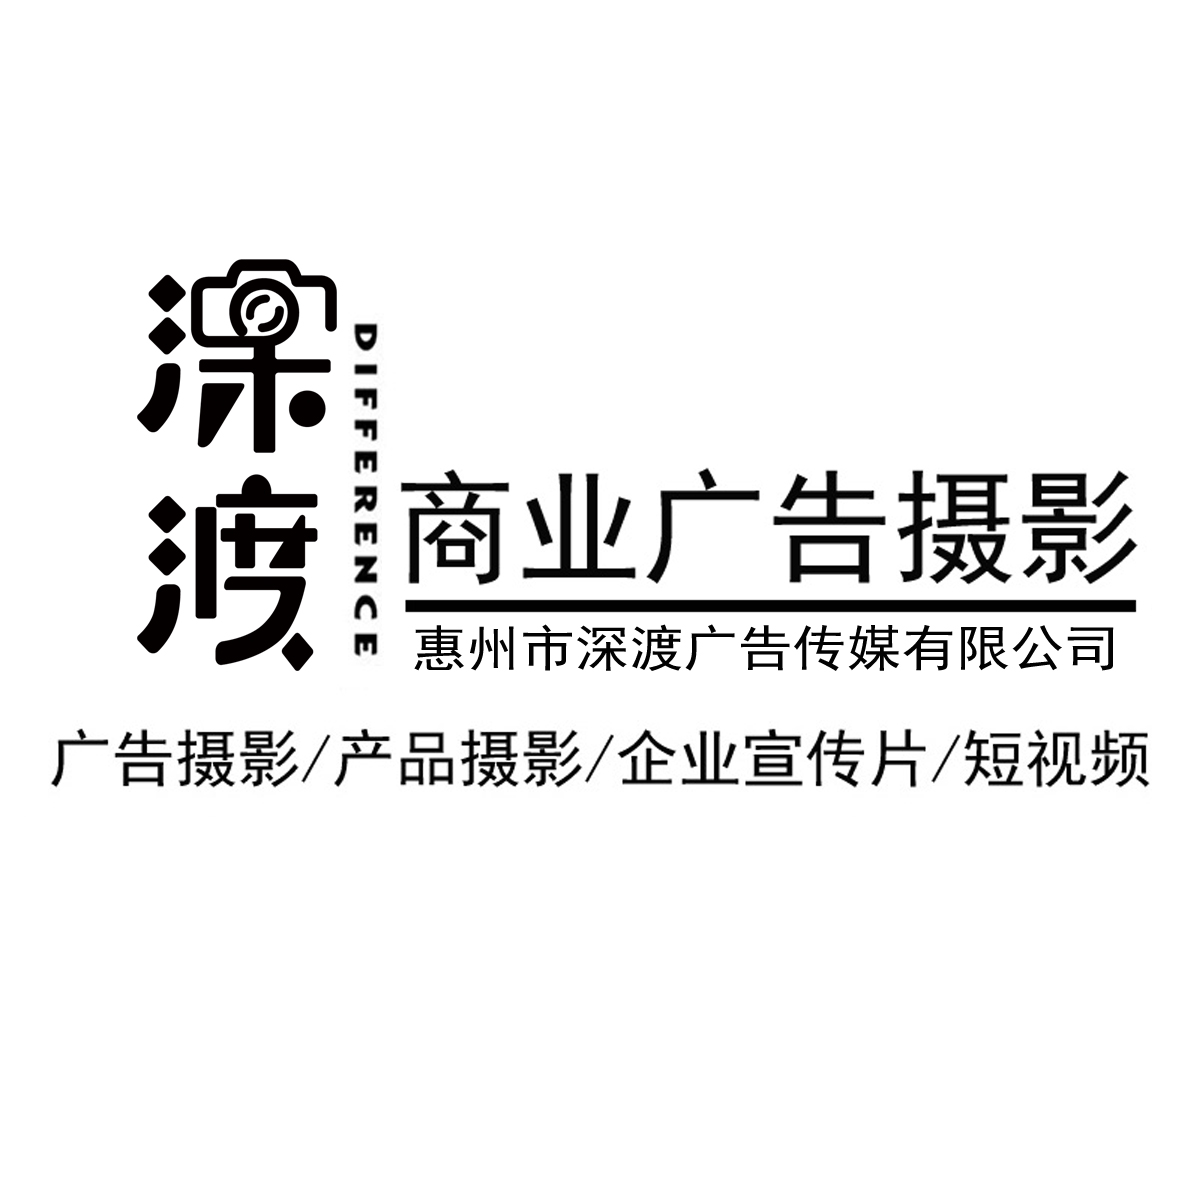 惠州市深渡广告传媒有限公司